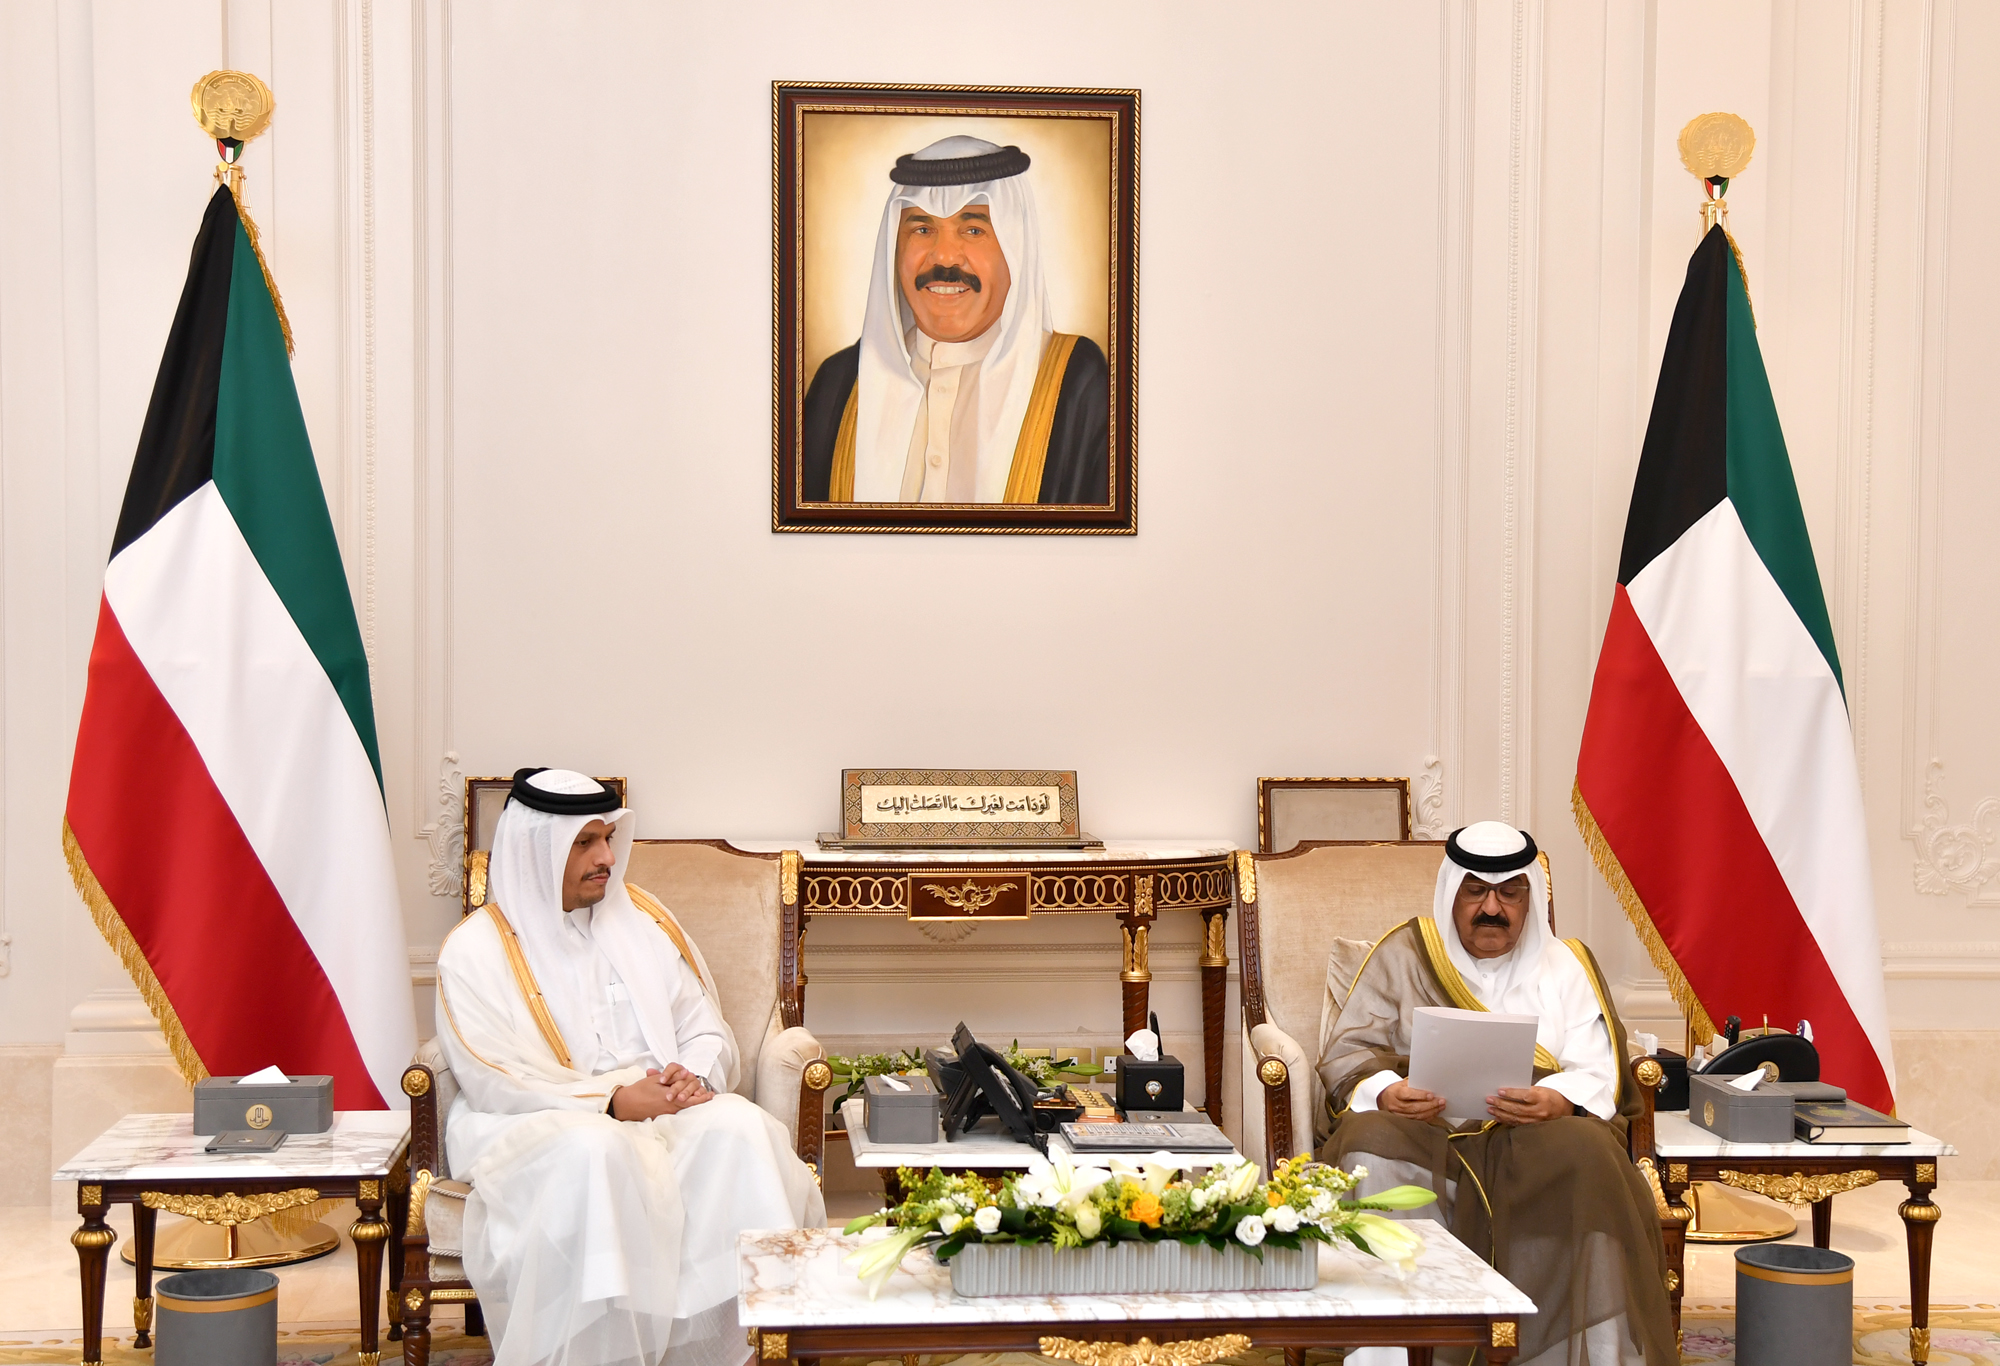 سمو ولي العهد يتسلم الرسالة الخطية من وزير الخارجية بدولة قطر